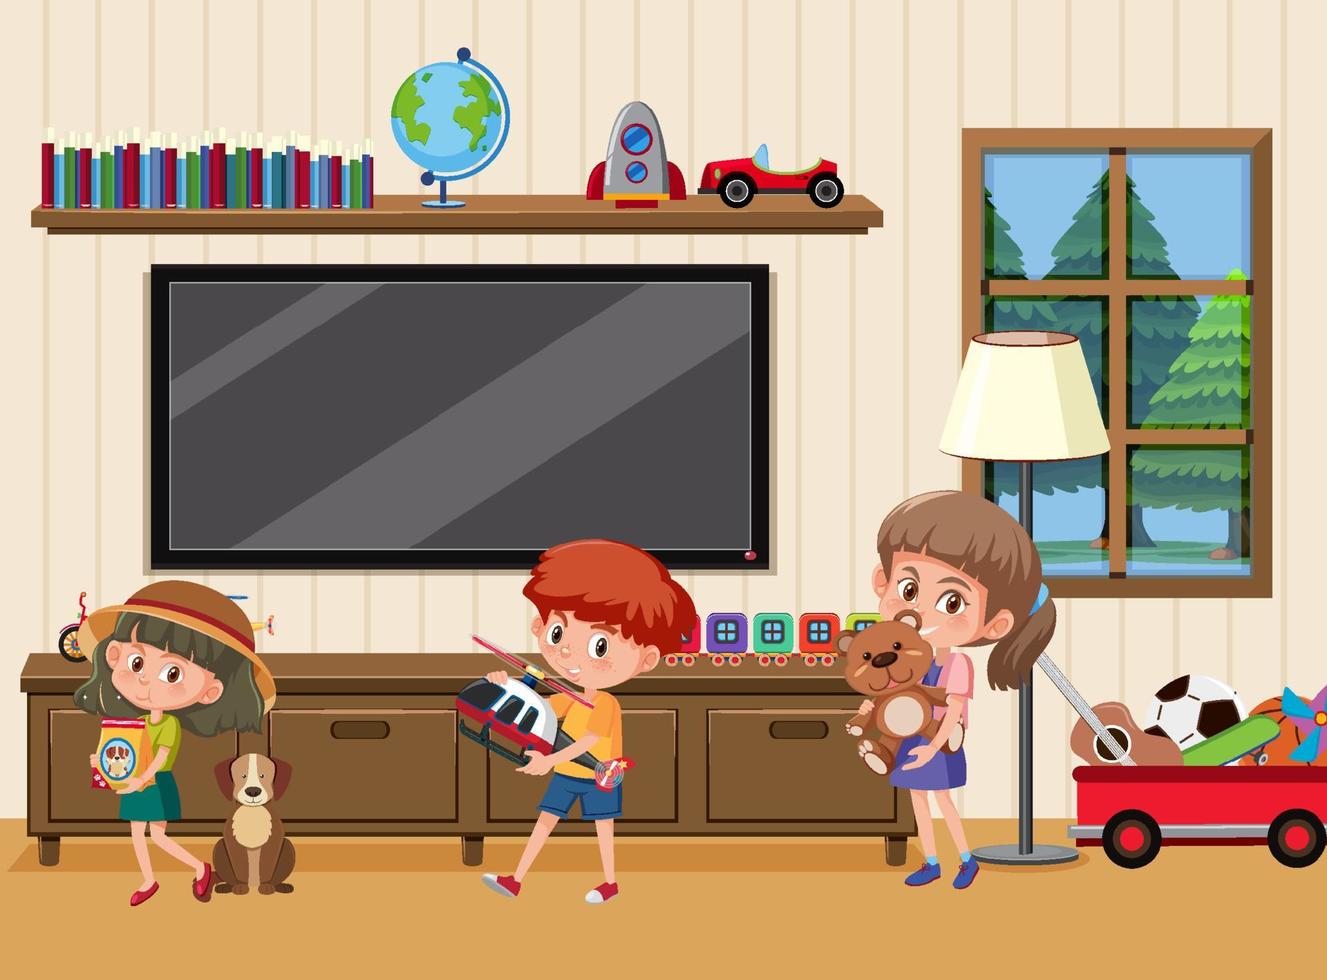 escena de la sala de estar con el personaje de dibujos animados de los niños vector